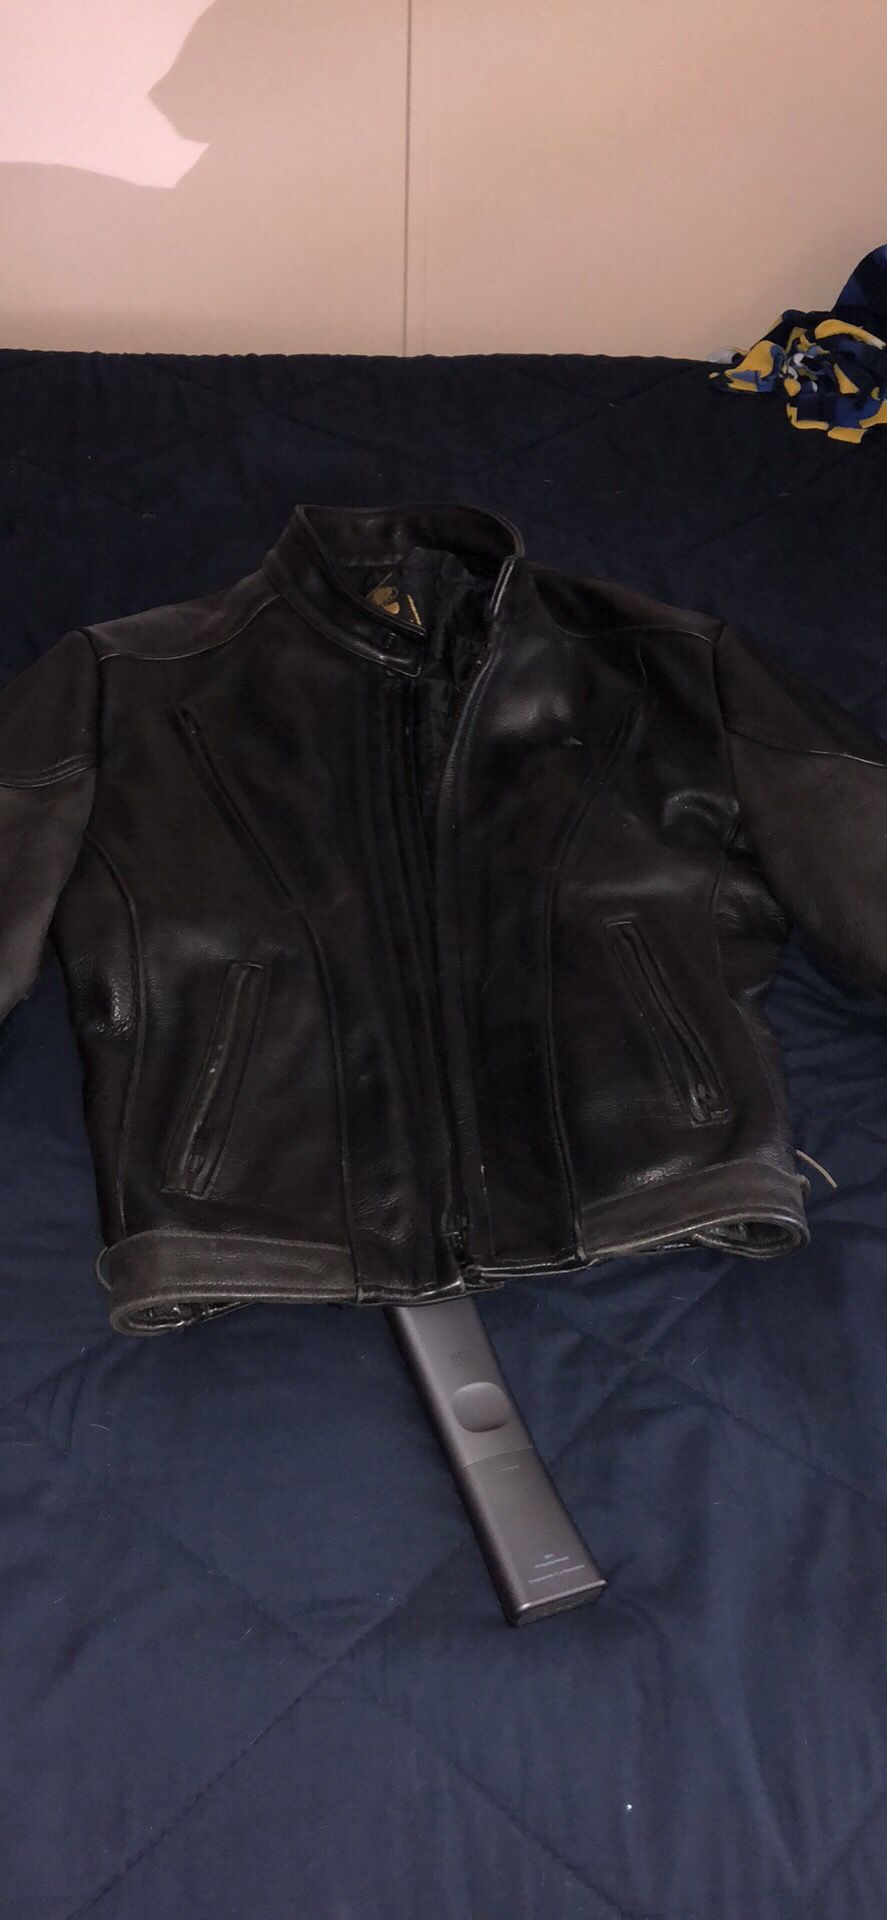 Black leather motorcycle jacket. Size 44